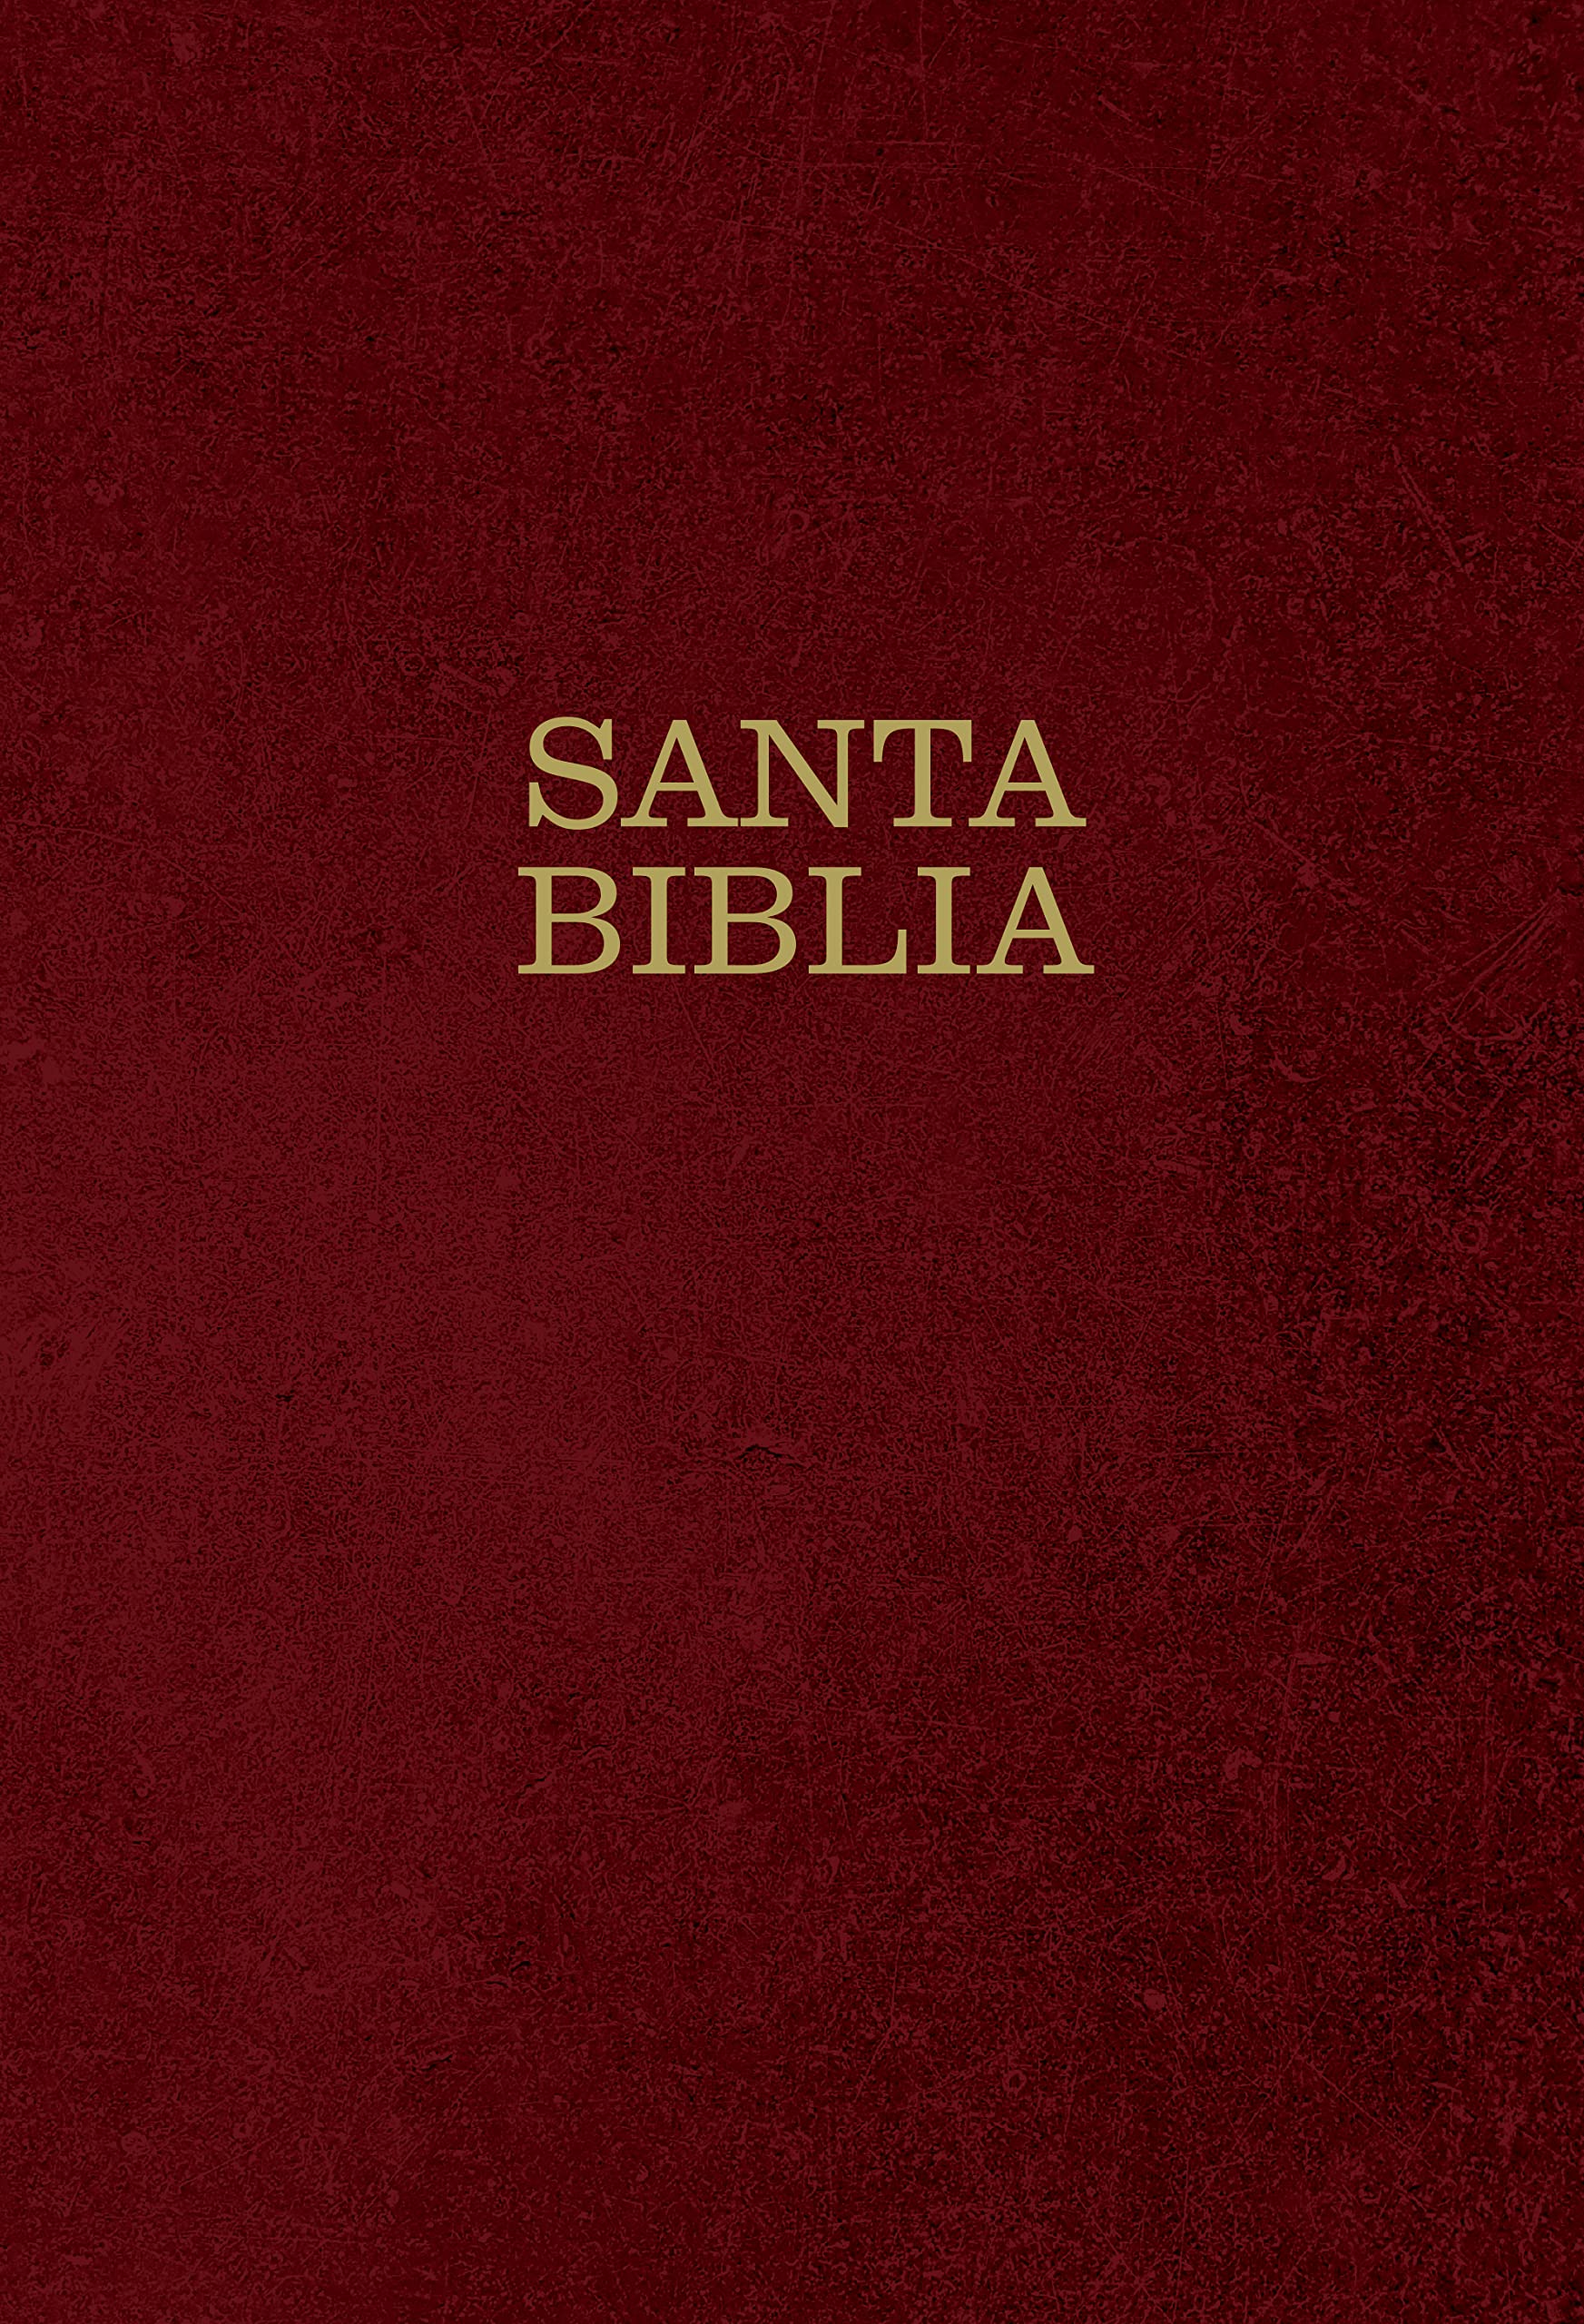 Biblia NTV Letra super gigante vino tinto - Librería Libros Cristianos - Biblia